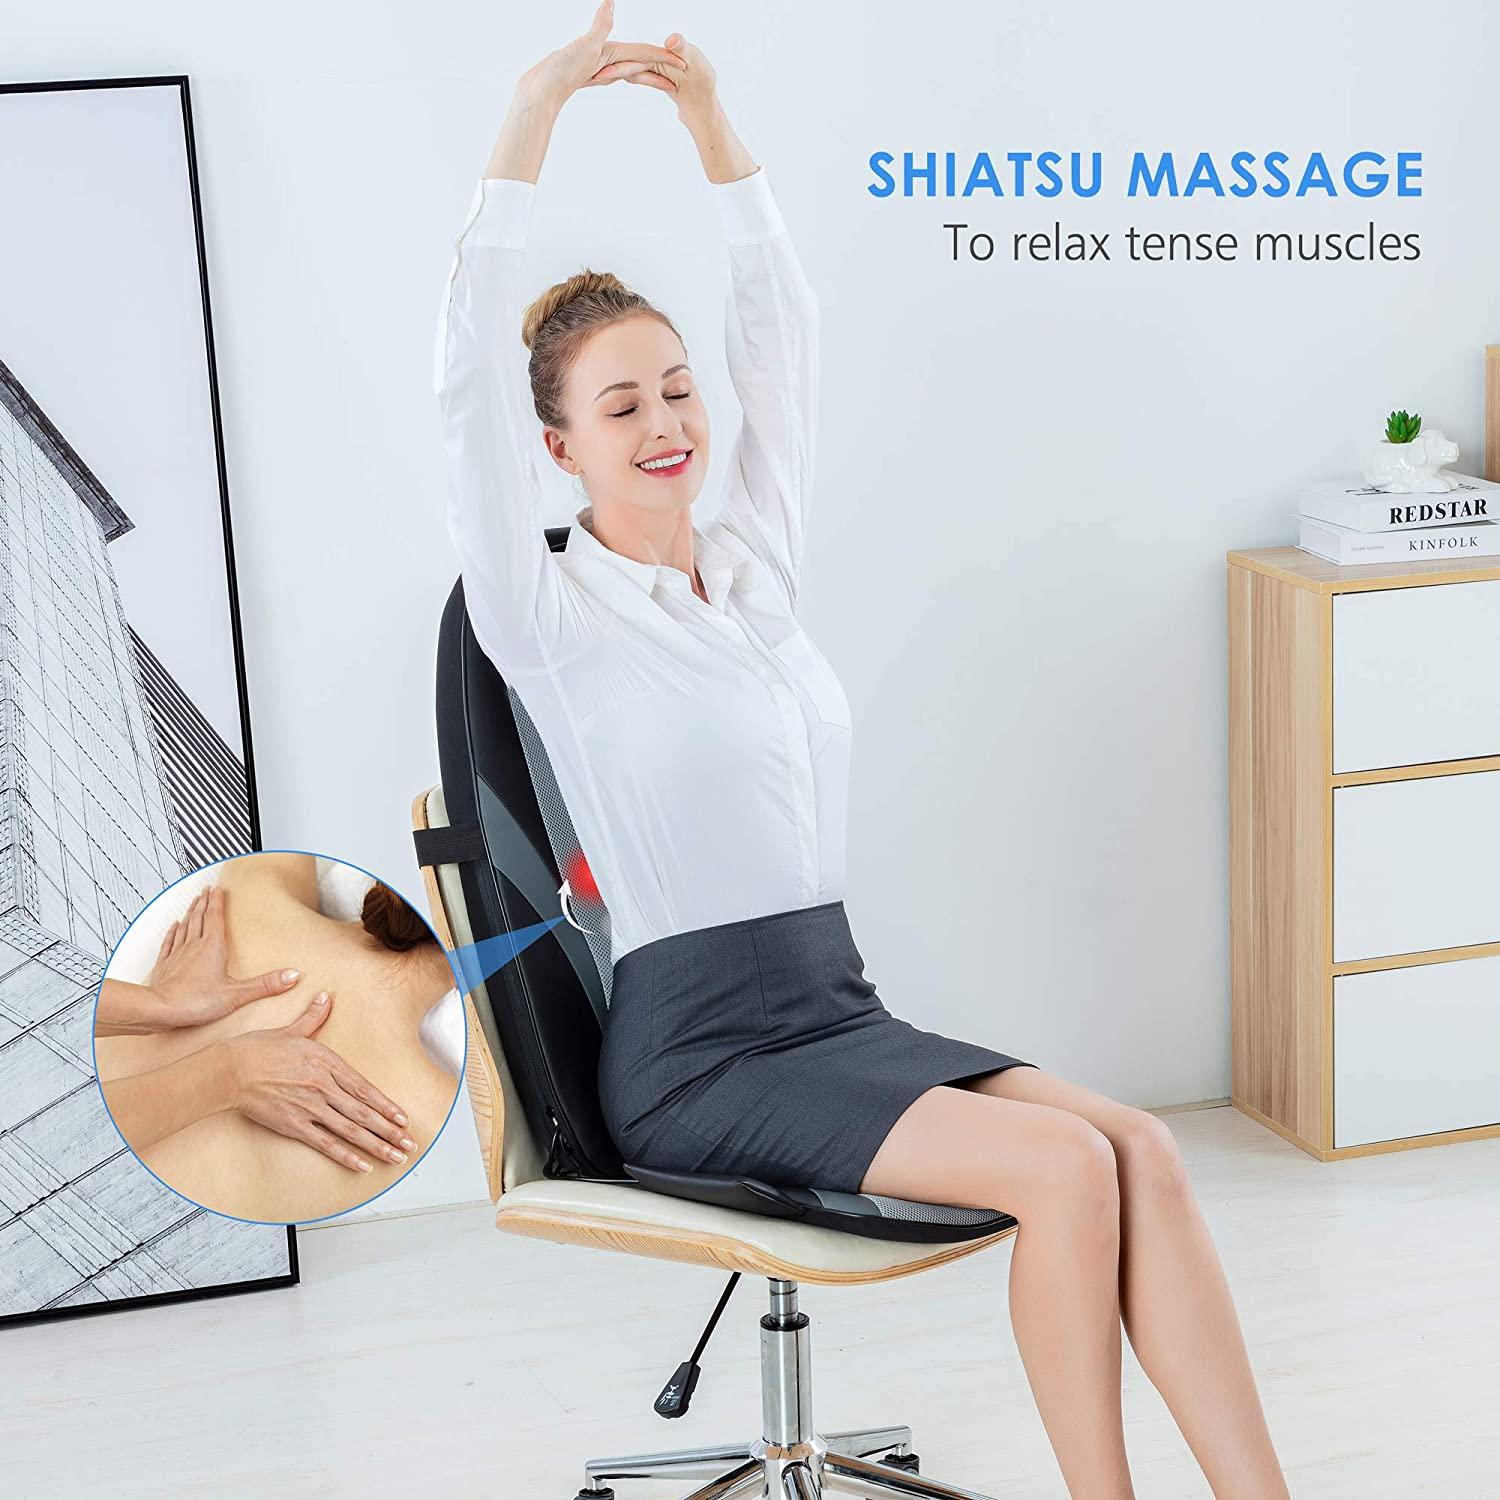 Comfier Shiatsu Neck Back Massager with Heat, 2D/3D Deep Tissue